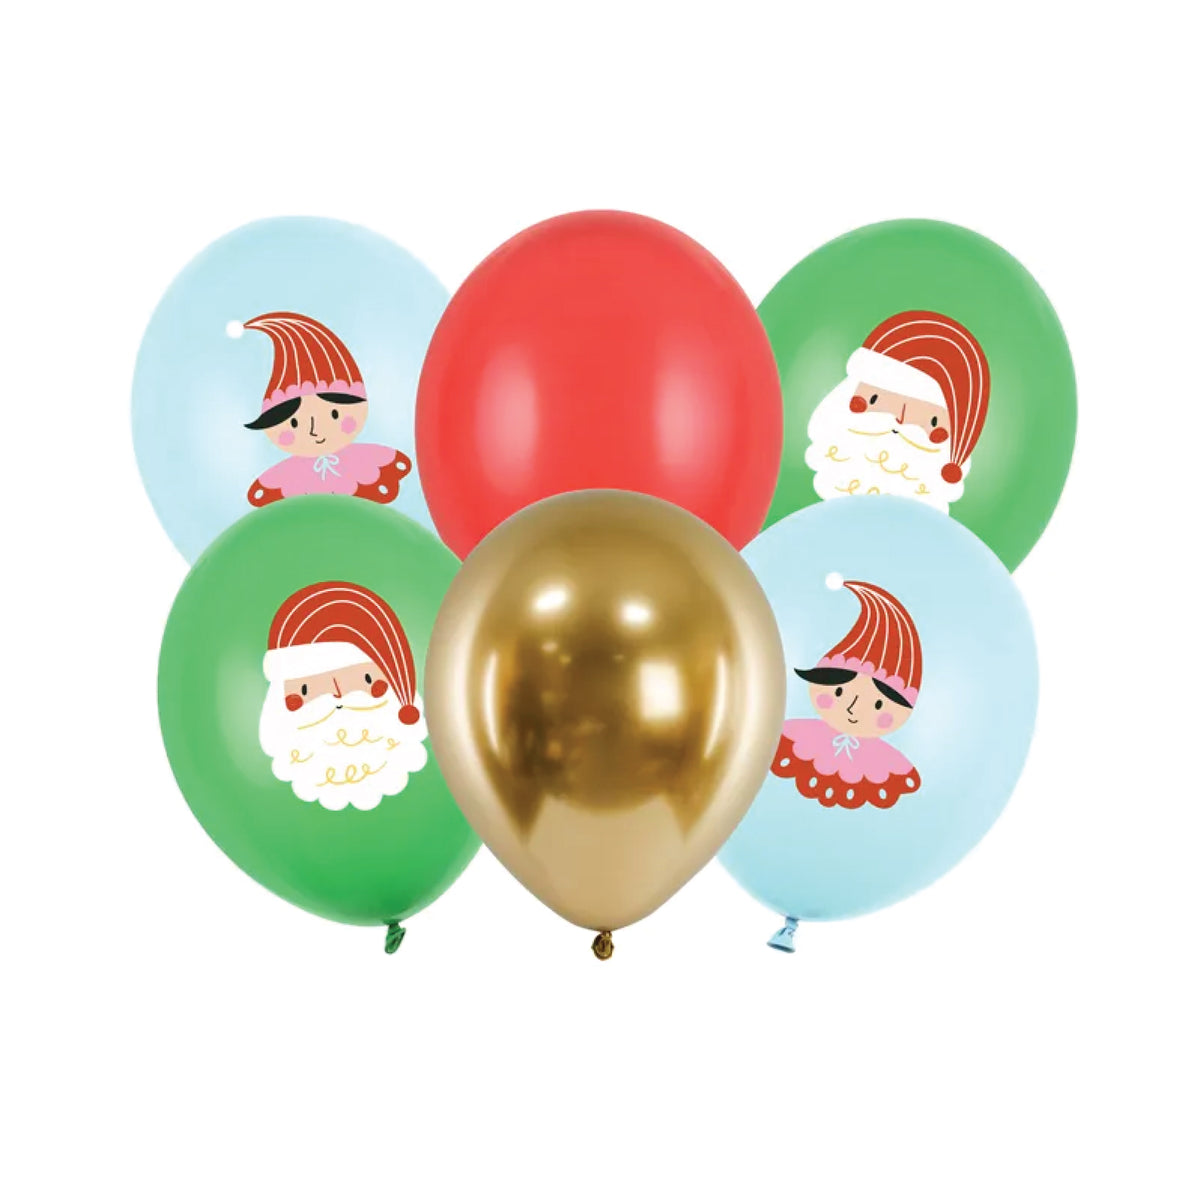 Alice in Wonderland Balloon Decor Feature